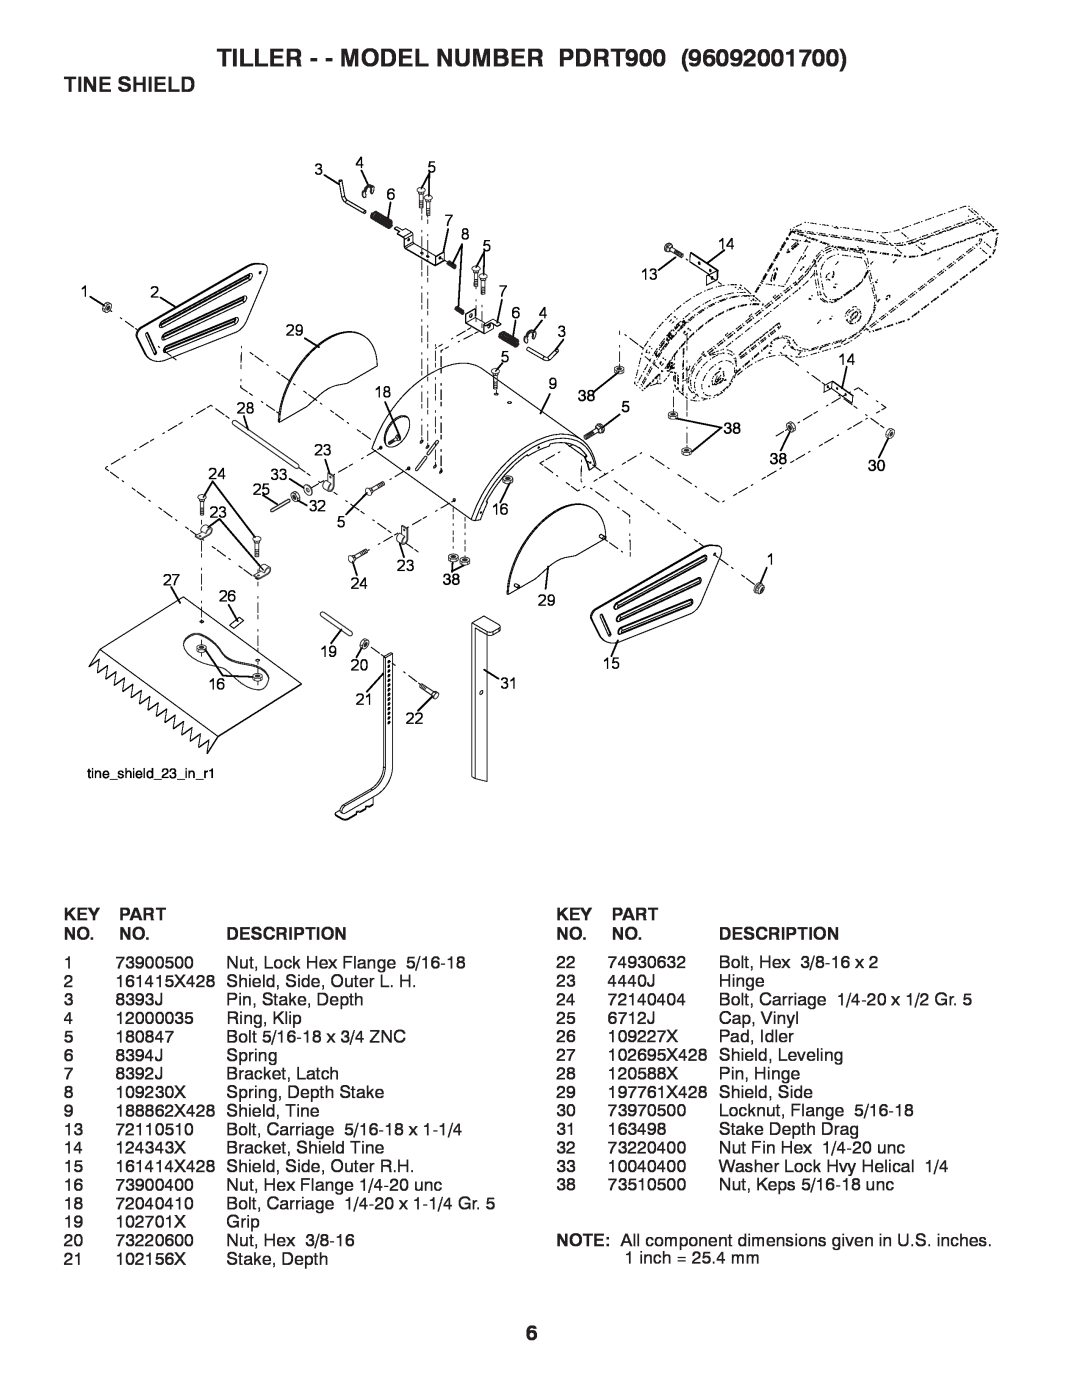 Poulan 96092001700 manual Tine Shield, TILLER - - MODEL NUMBER PDRT900, Part, Description 